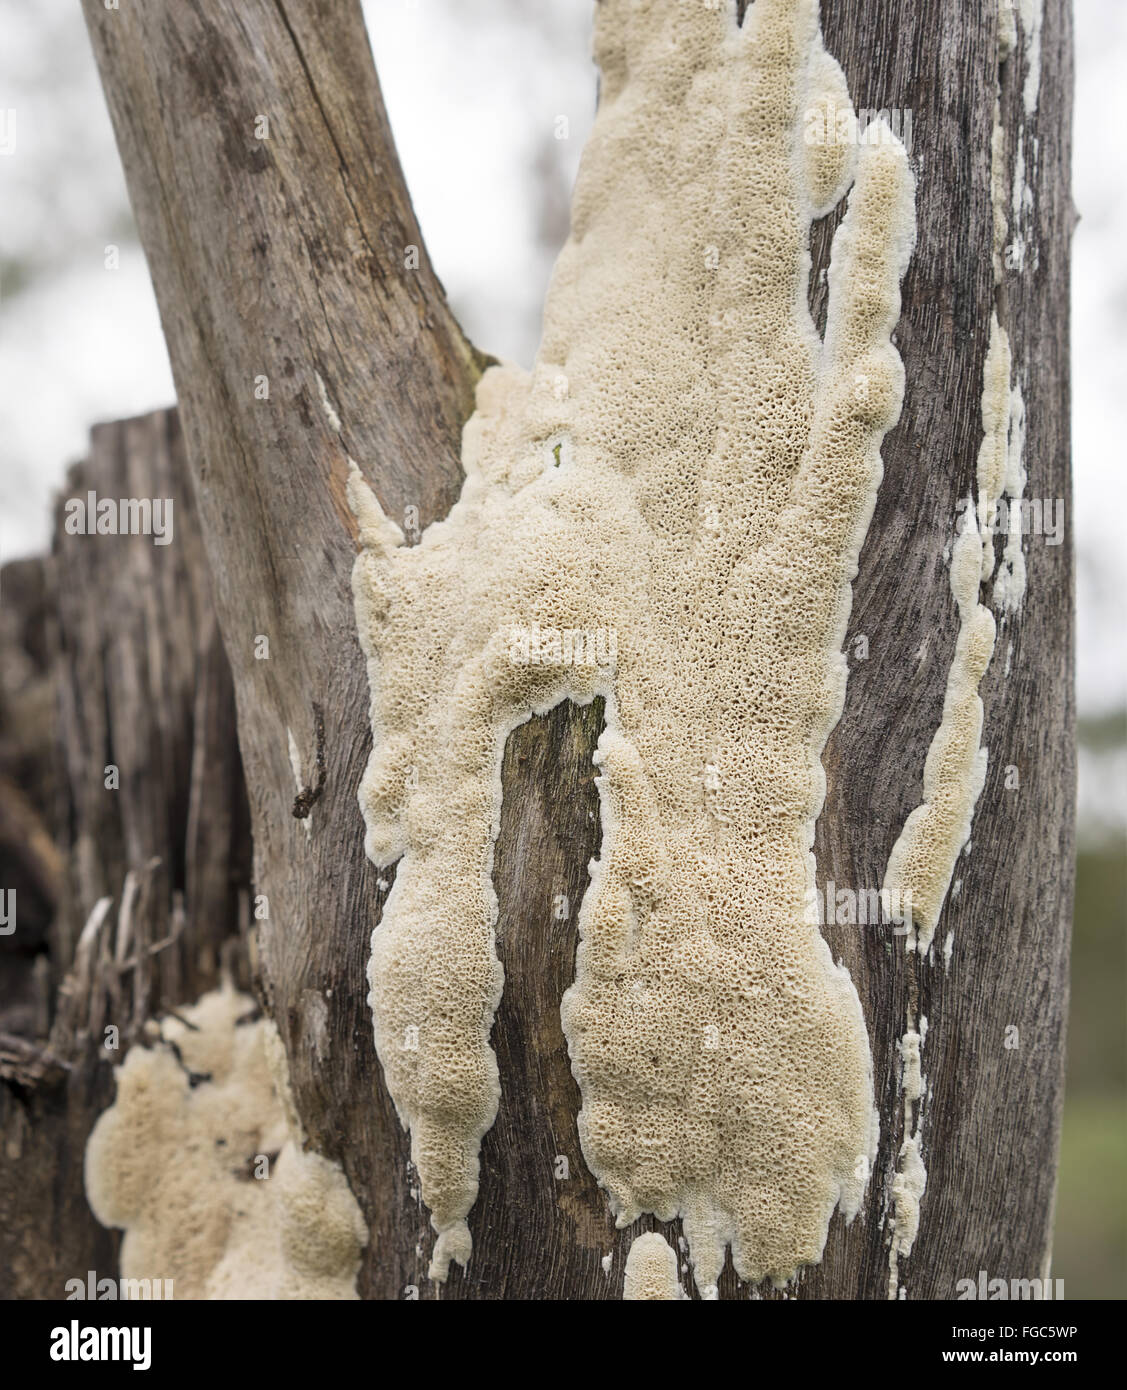 Großen Fruchtkörper des australischen Polypore Pilz wächst auf Spotted Gum Eukalyptus stumpf nach Regen Stockfoto